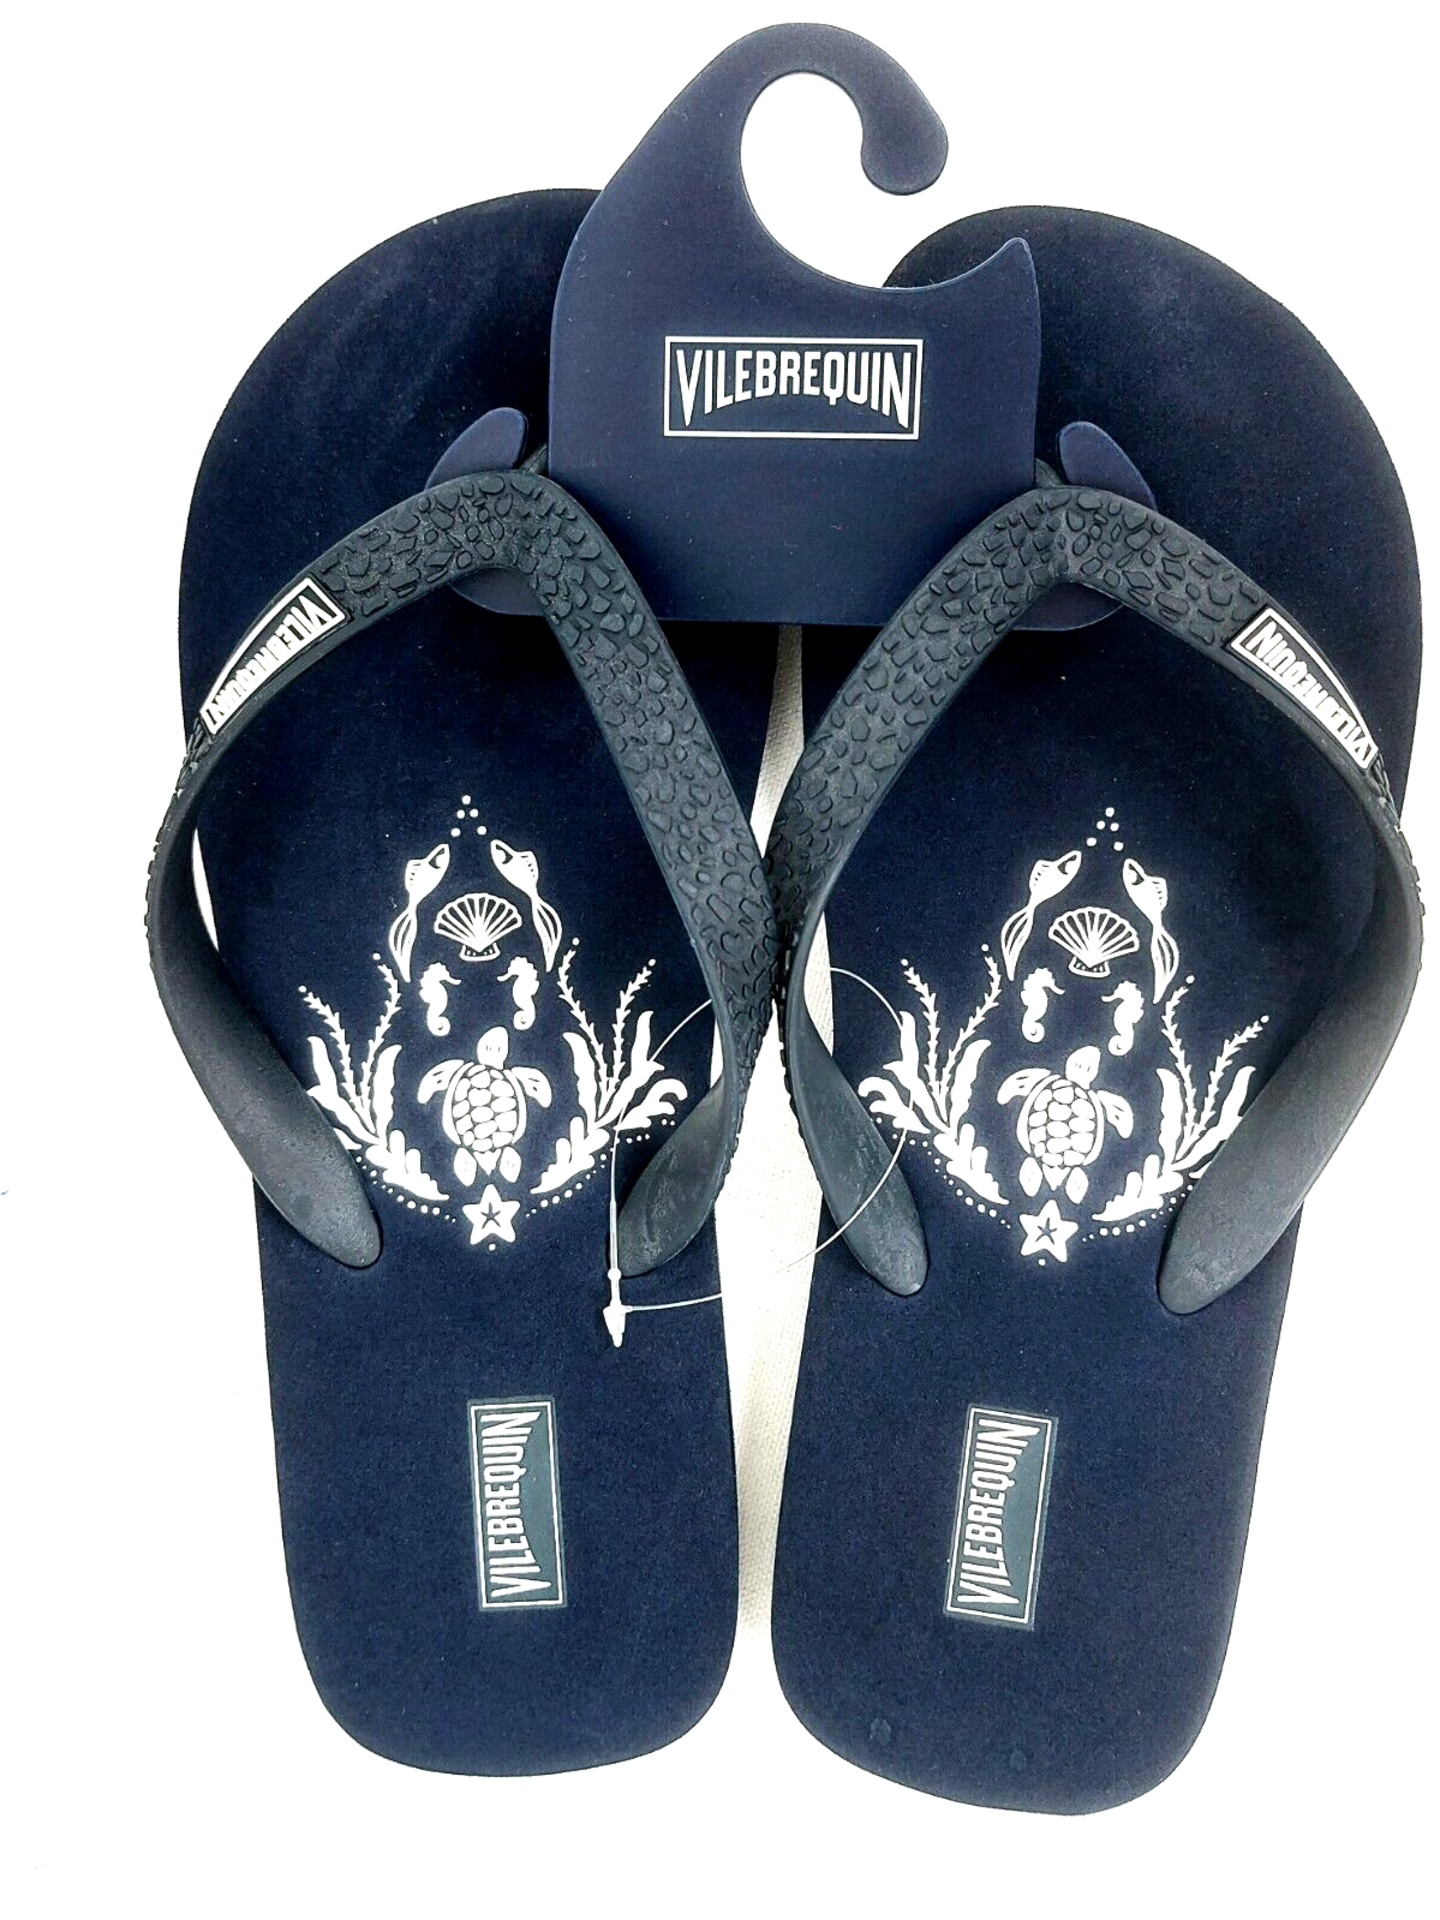 VILEBREQUIN Flip Flops Navy - Authentic & New - Size 4 / 5 - RRP Â£65+ !